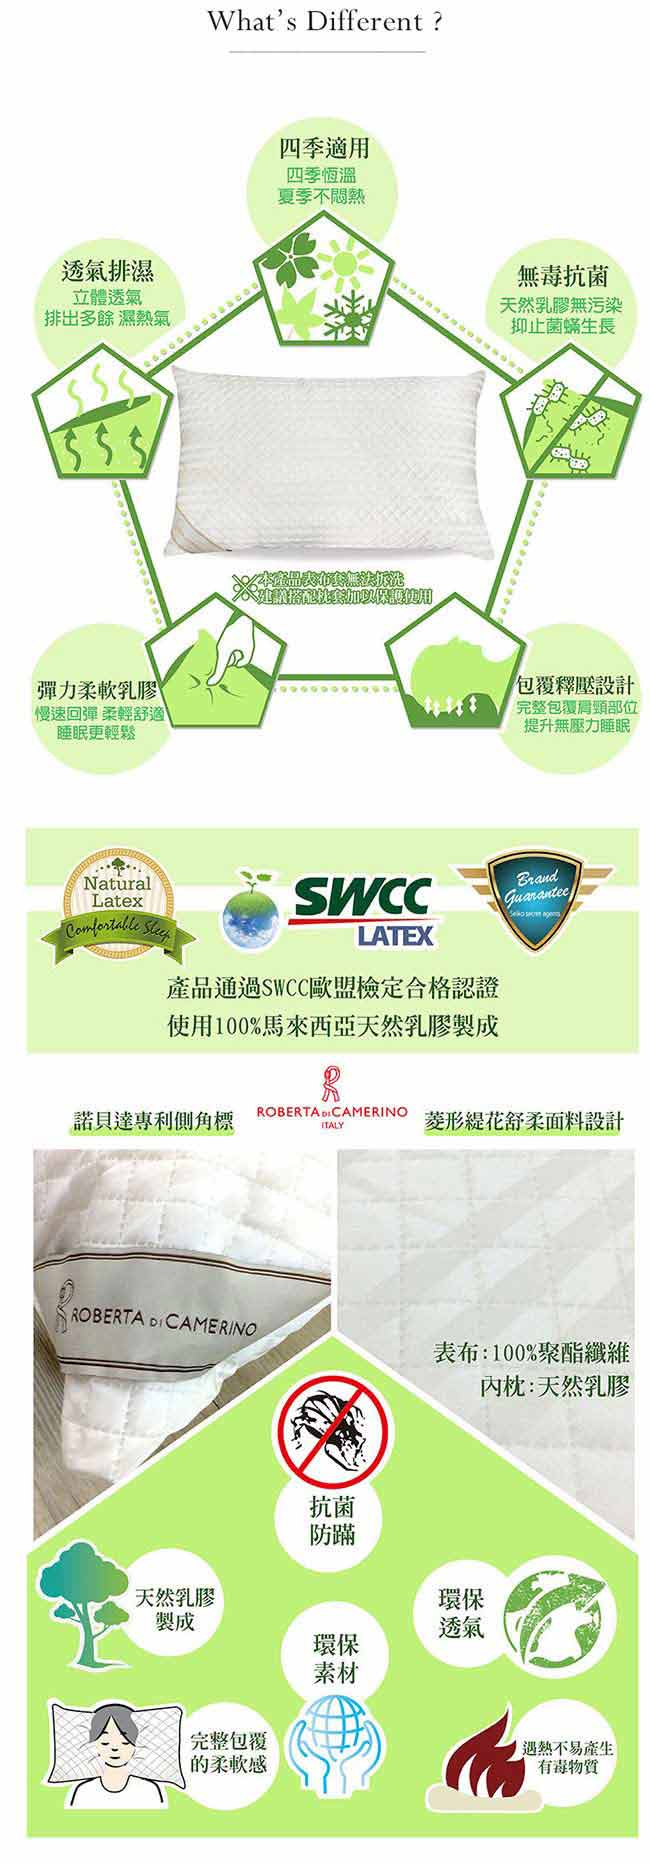 戀家小舖 / 枕頭乳膠釋壓QQ枕-兩入組100%天然乳膠台灣製